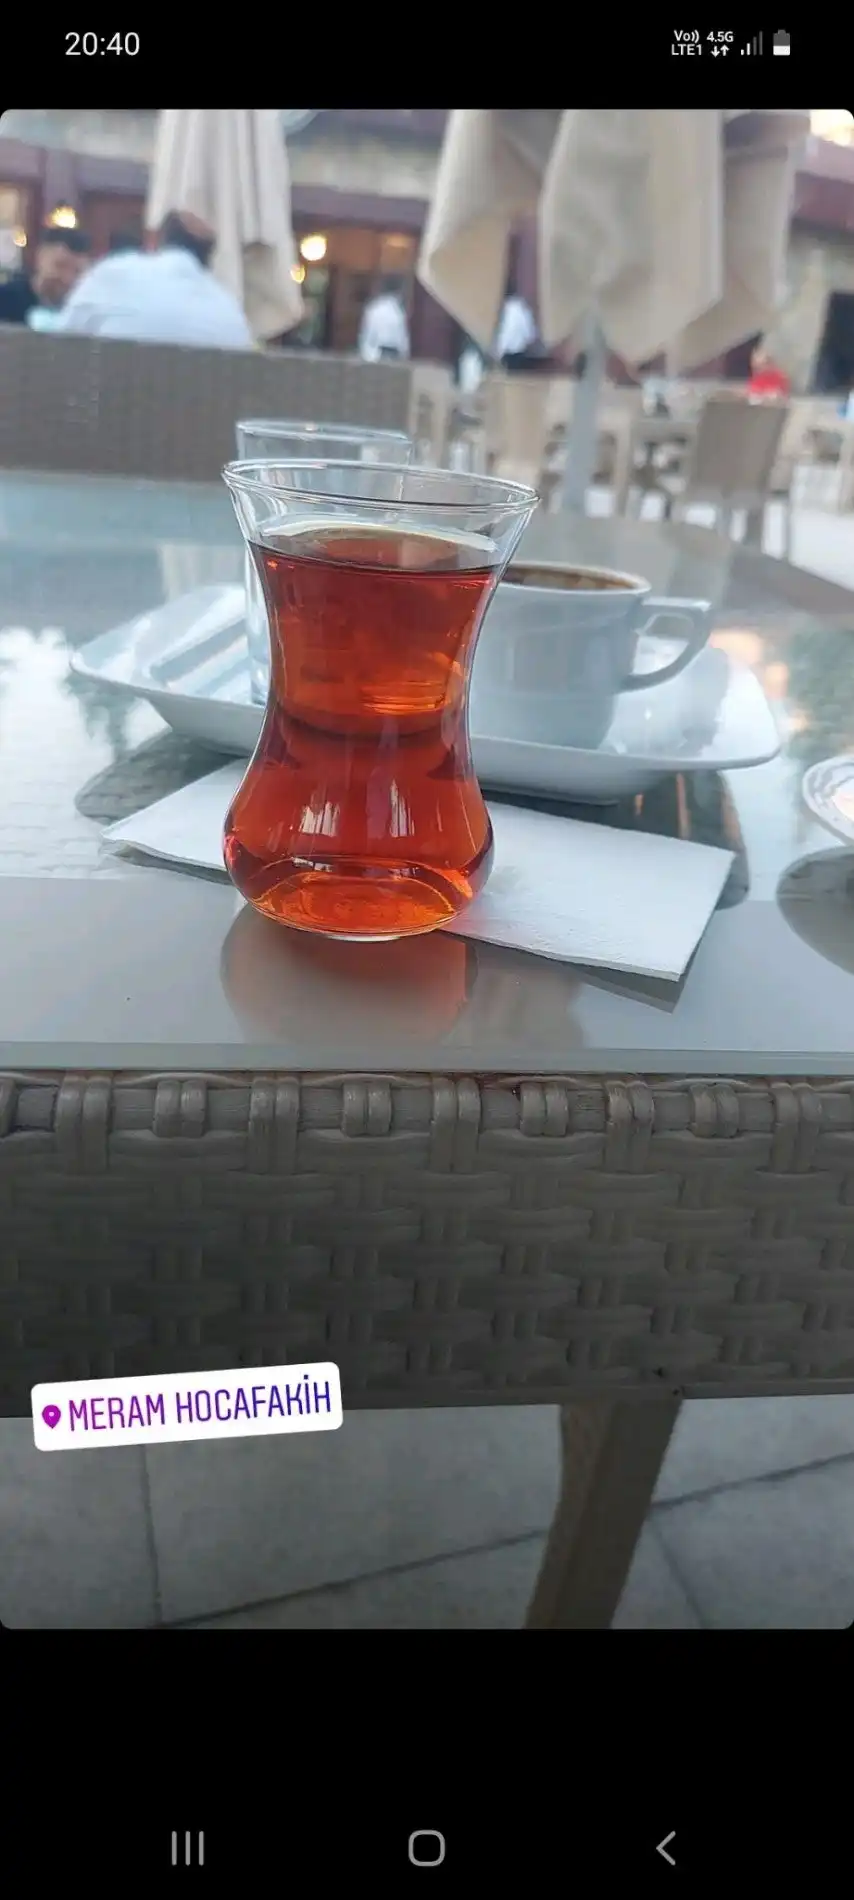 Kafe Meram Hocafakıh